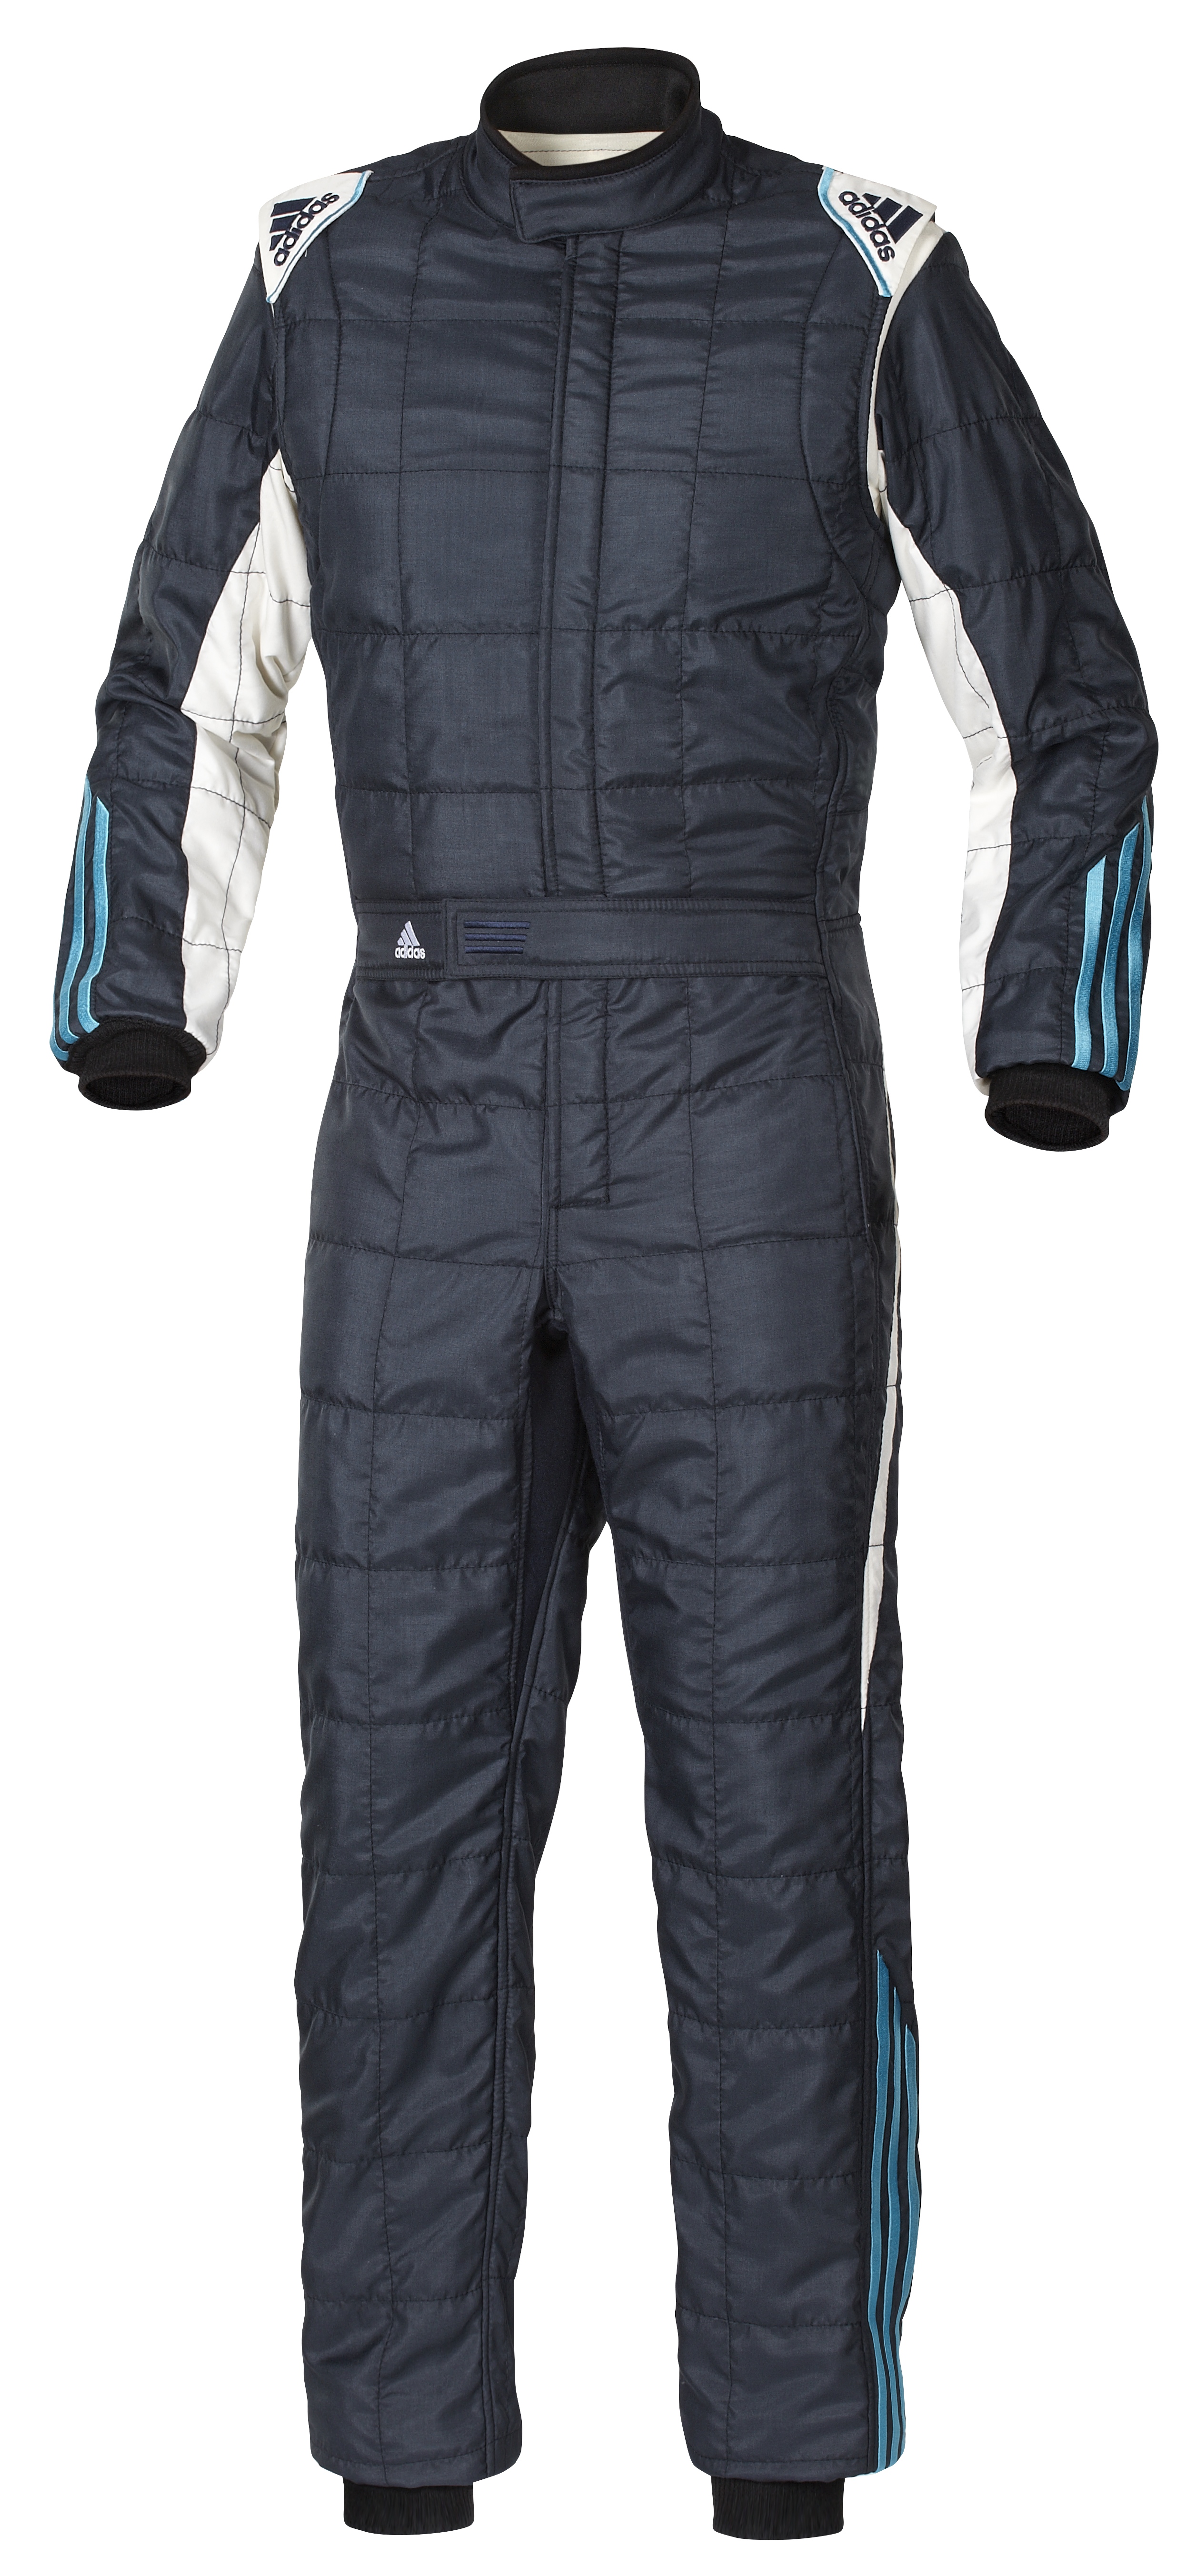 着後レビューで 送料無料 ビゴラス 安全基準をクリアーしたFIFA公認レーシングスーツ Racing Suit Stage200 ブラック ...